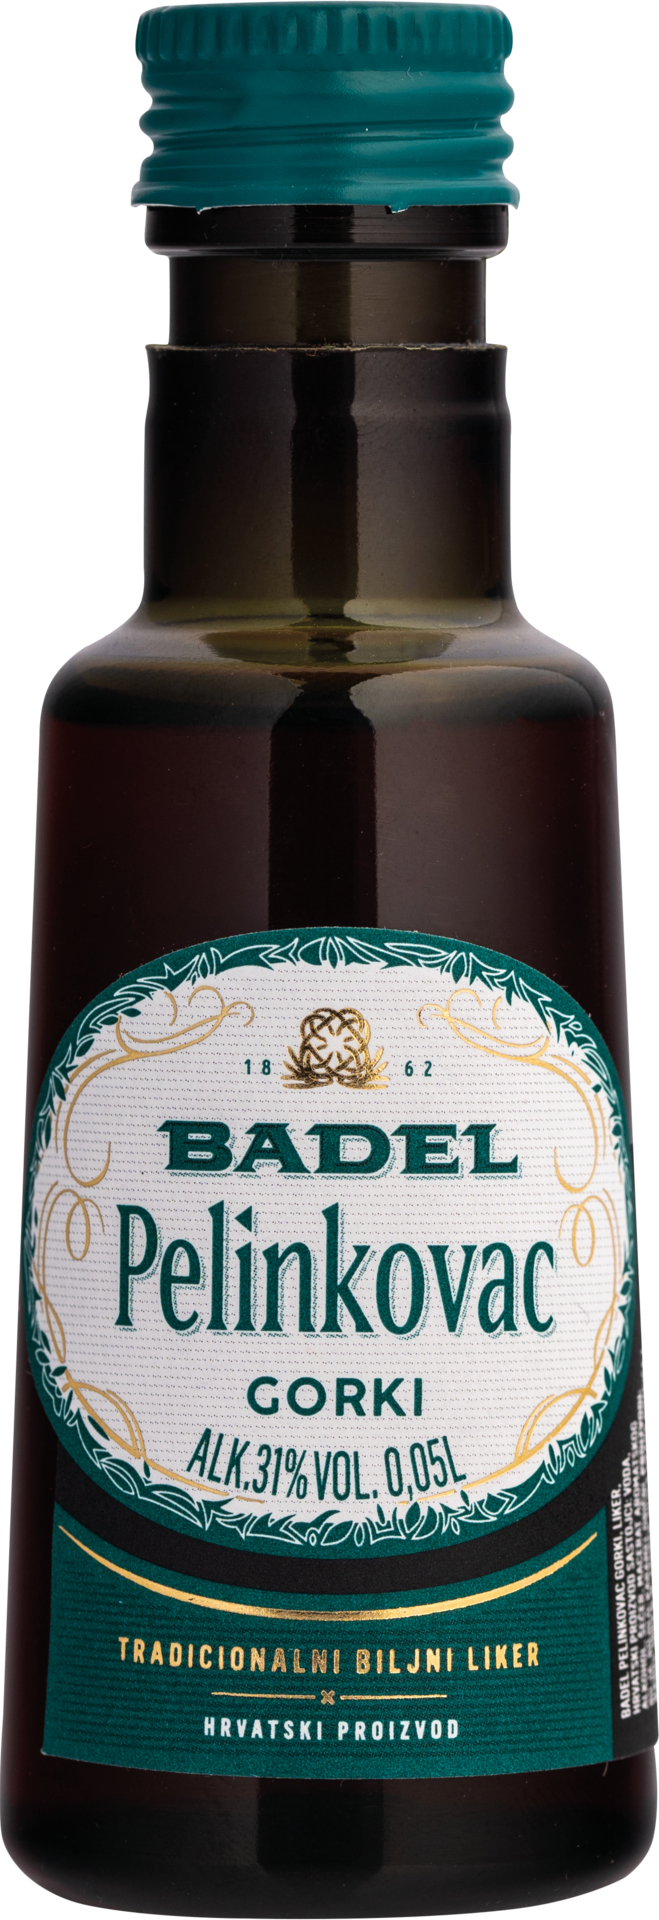 Badel Pelinkovac Gorki 0,05l